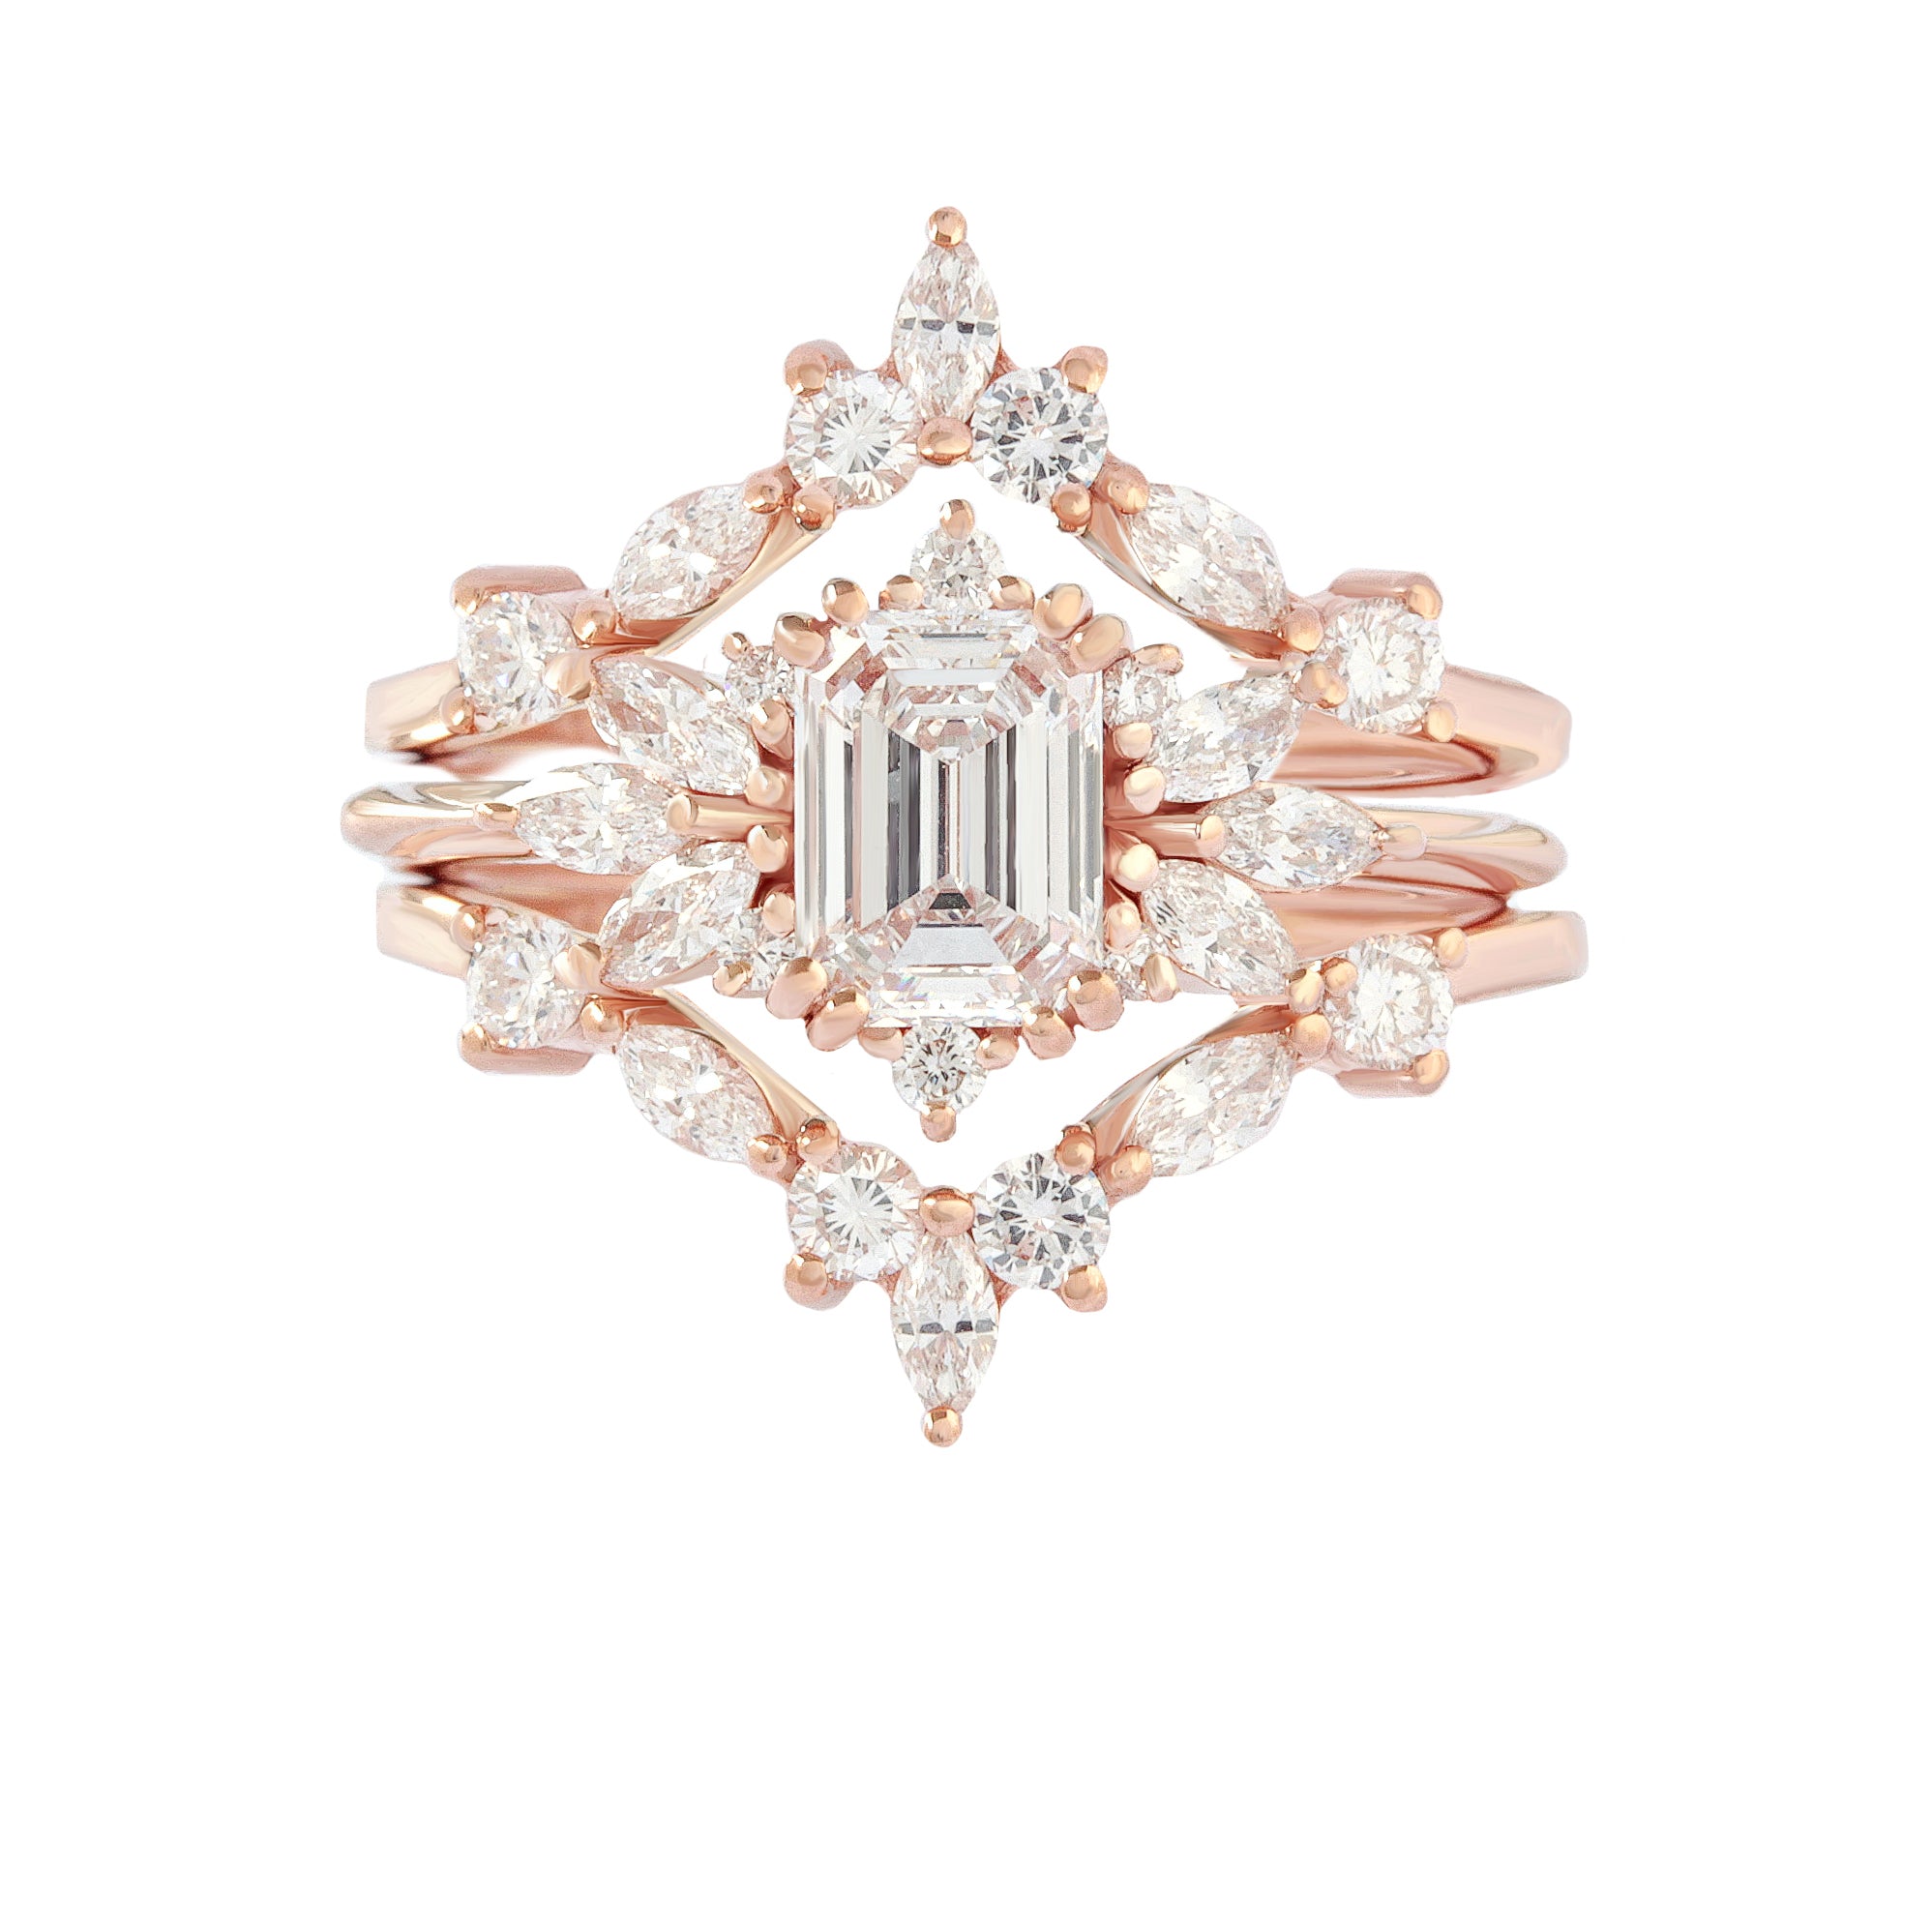 Emerald Cut Diamond Engagement Ring "Spark" & "Hermes" Nesting Rings